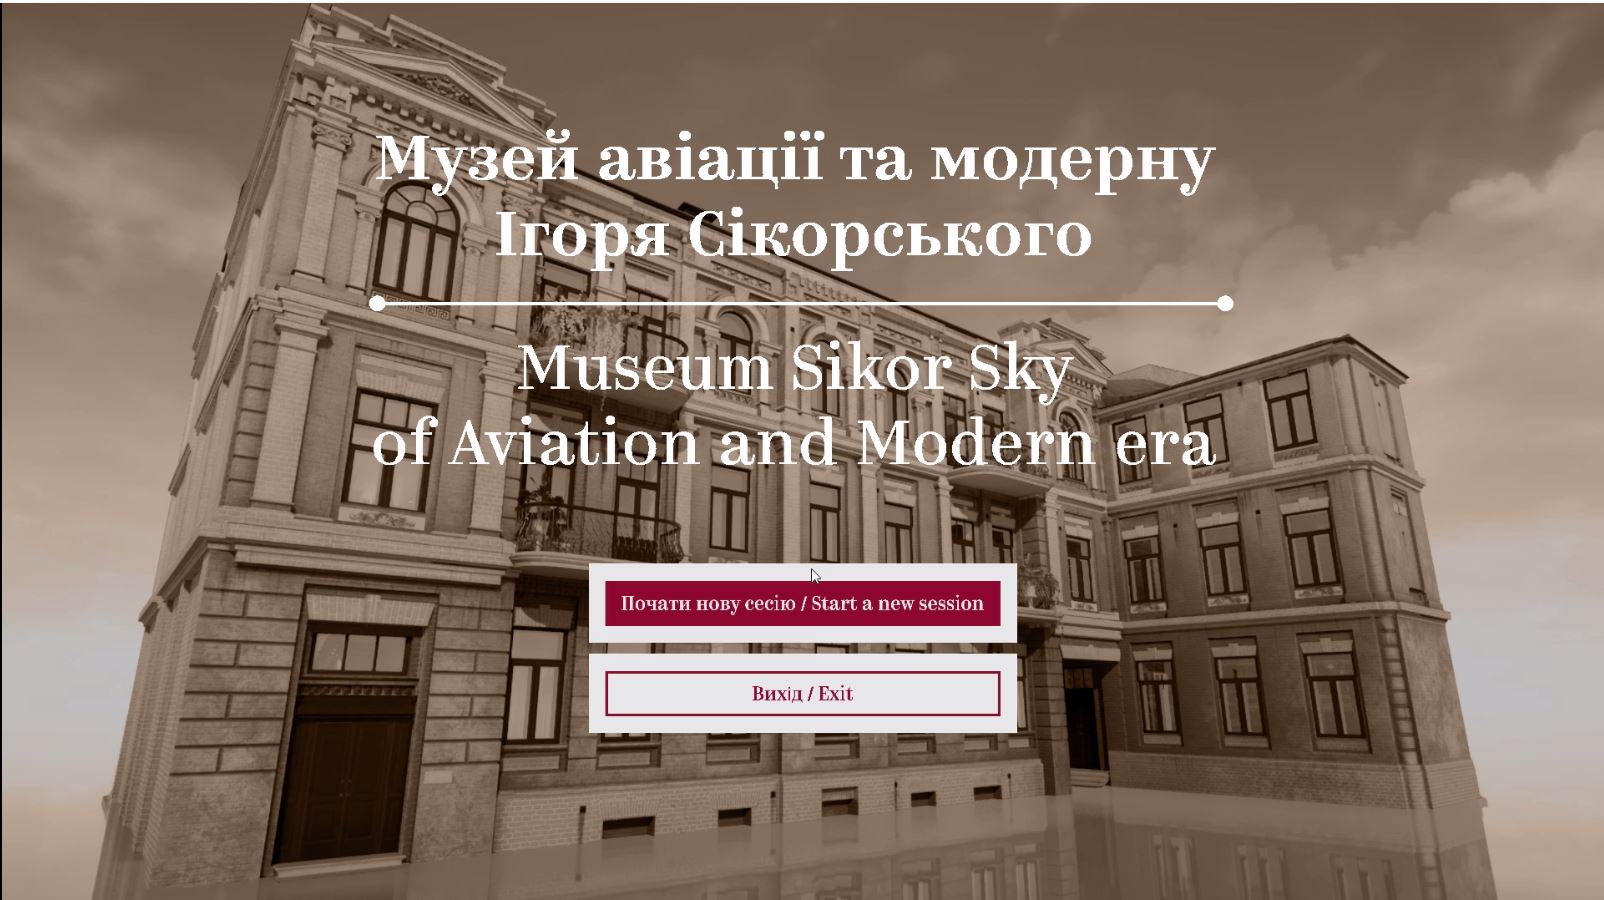 Друга відео презентація першого віртуального інтерактивного музею в Україні Museum Sikor Sky